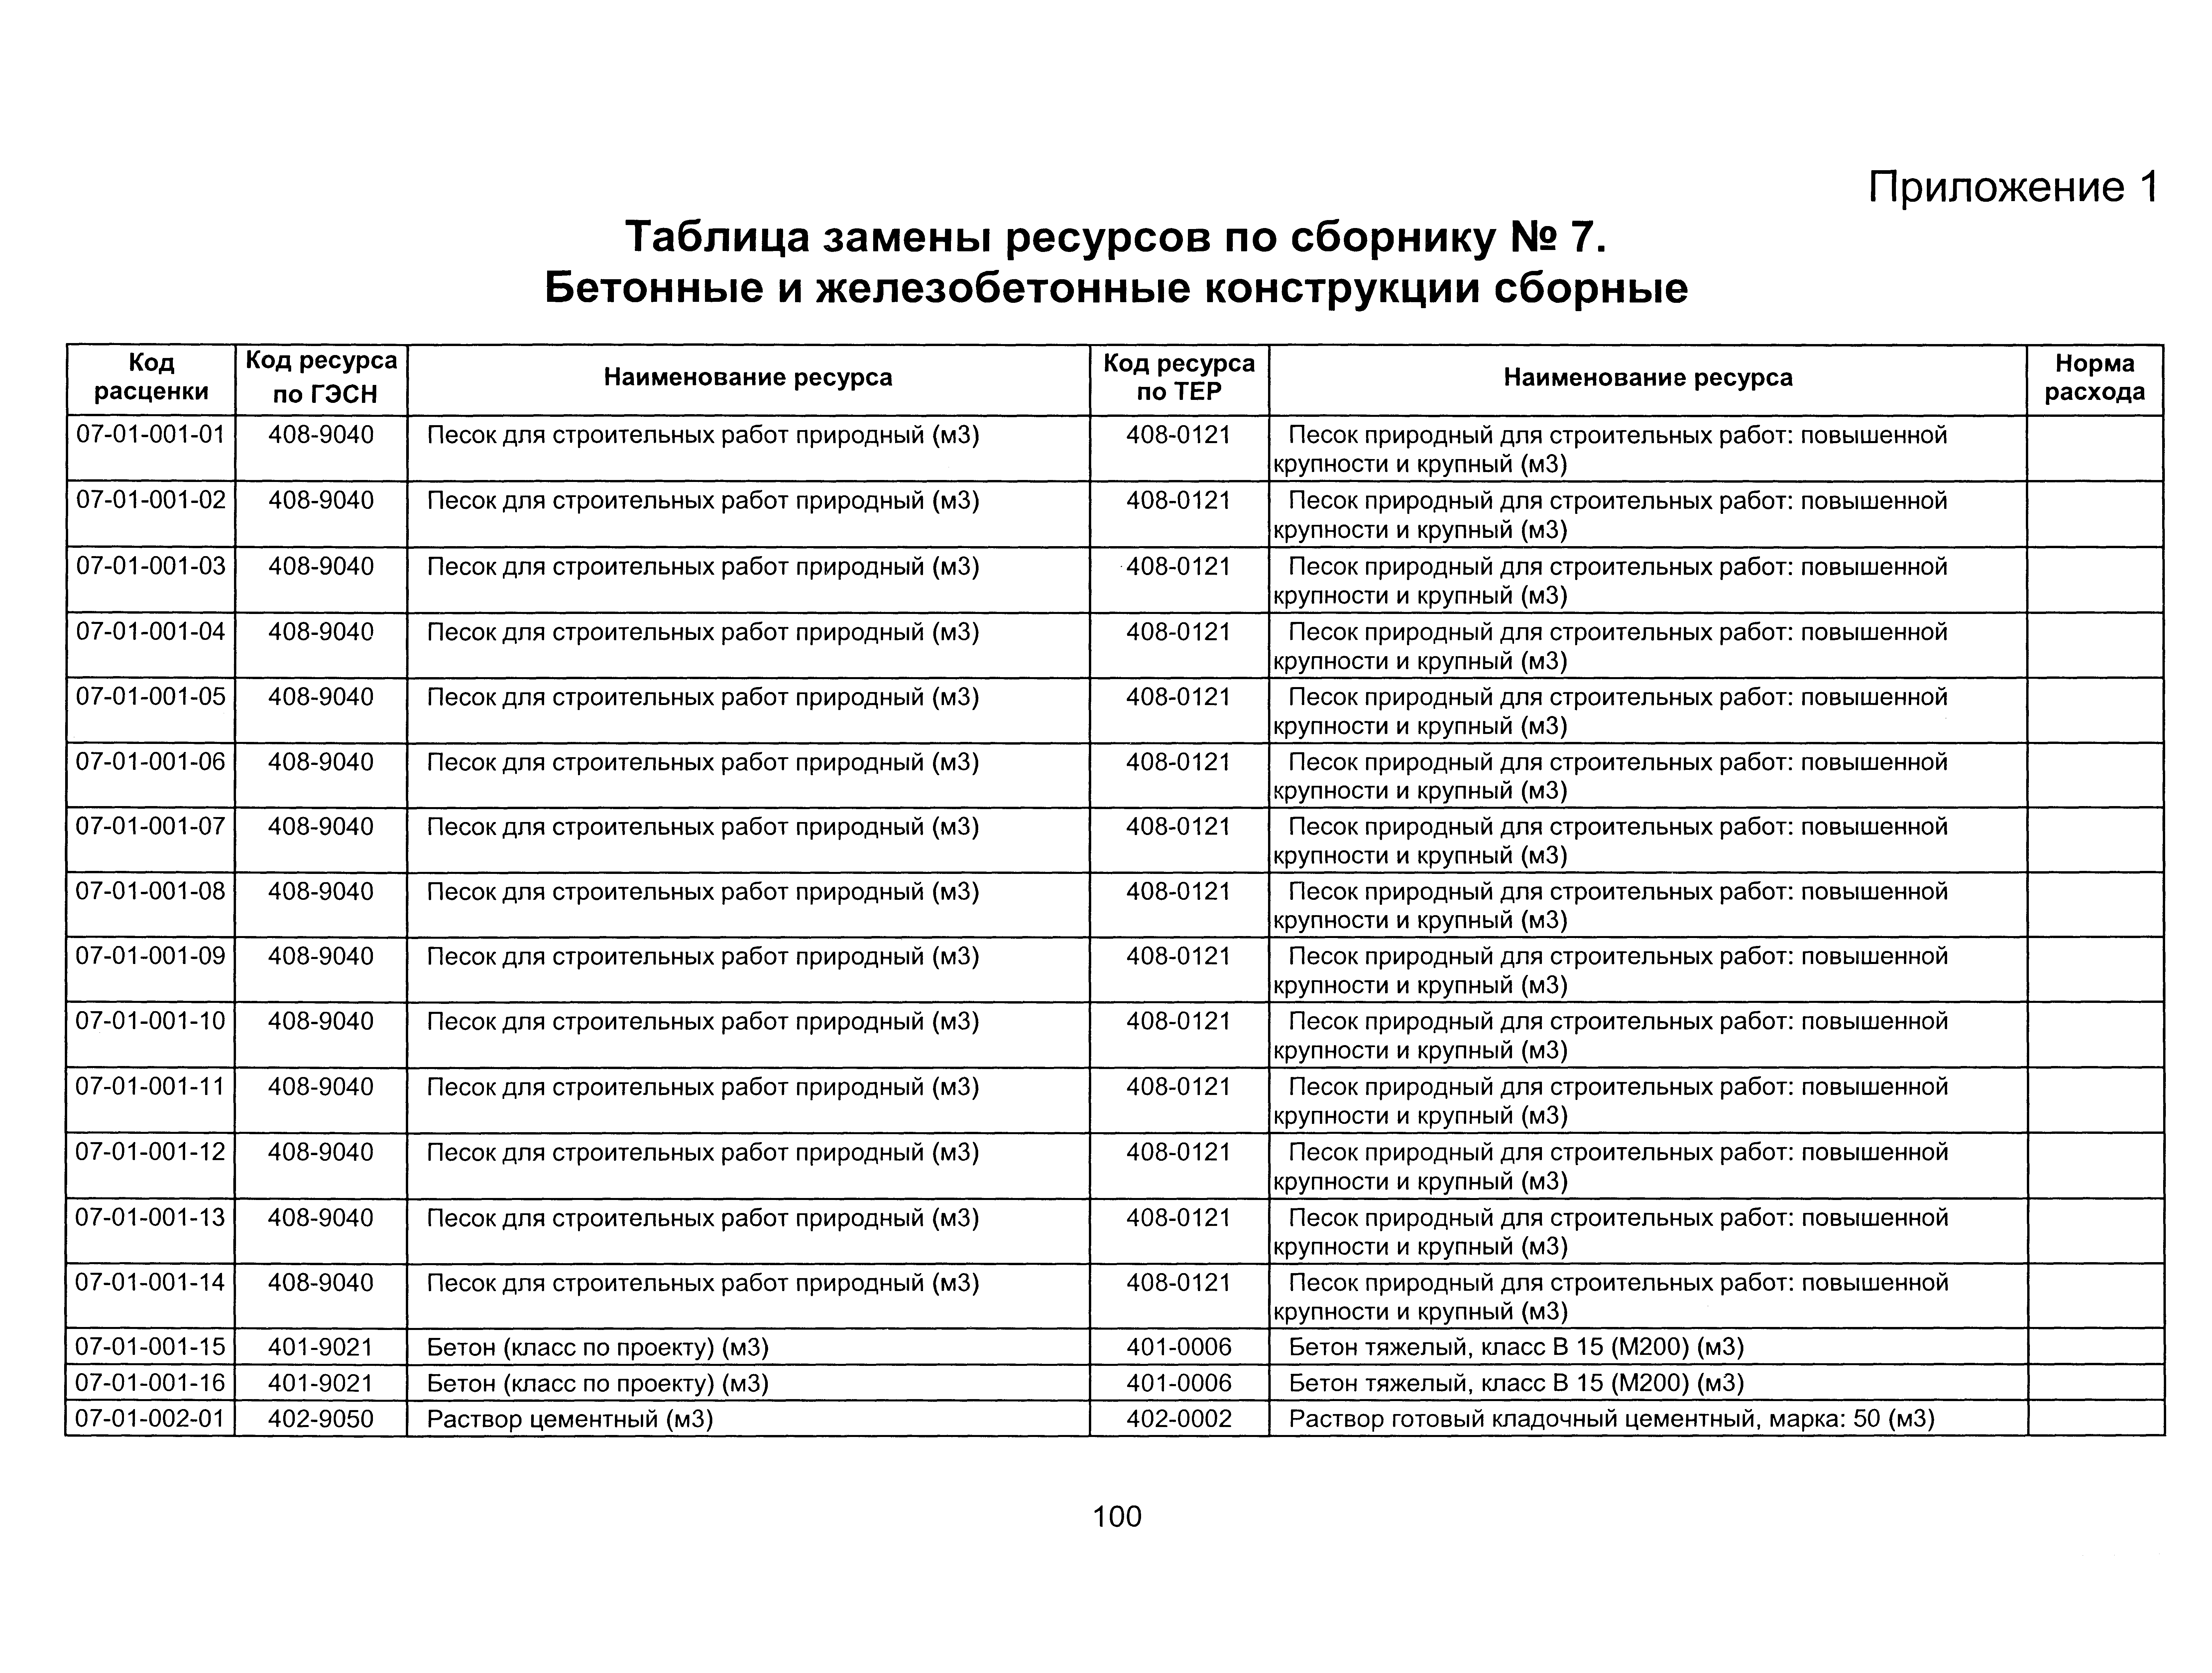 ТЕР 2001-07 Новосибирской области